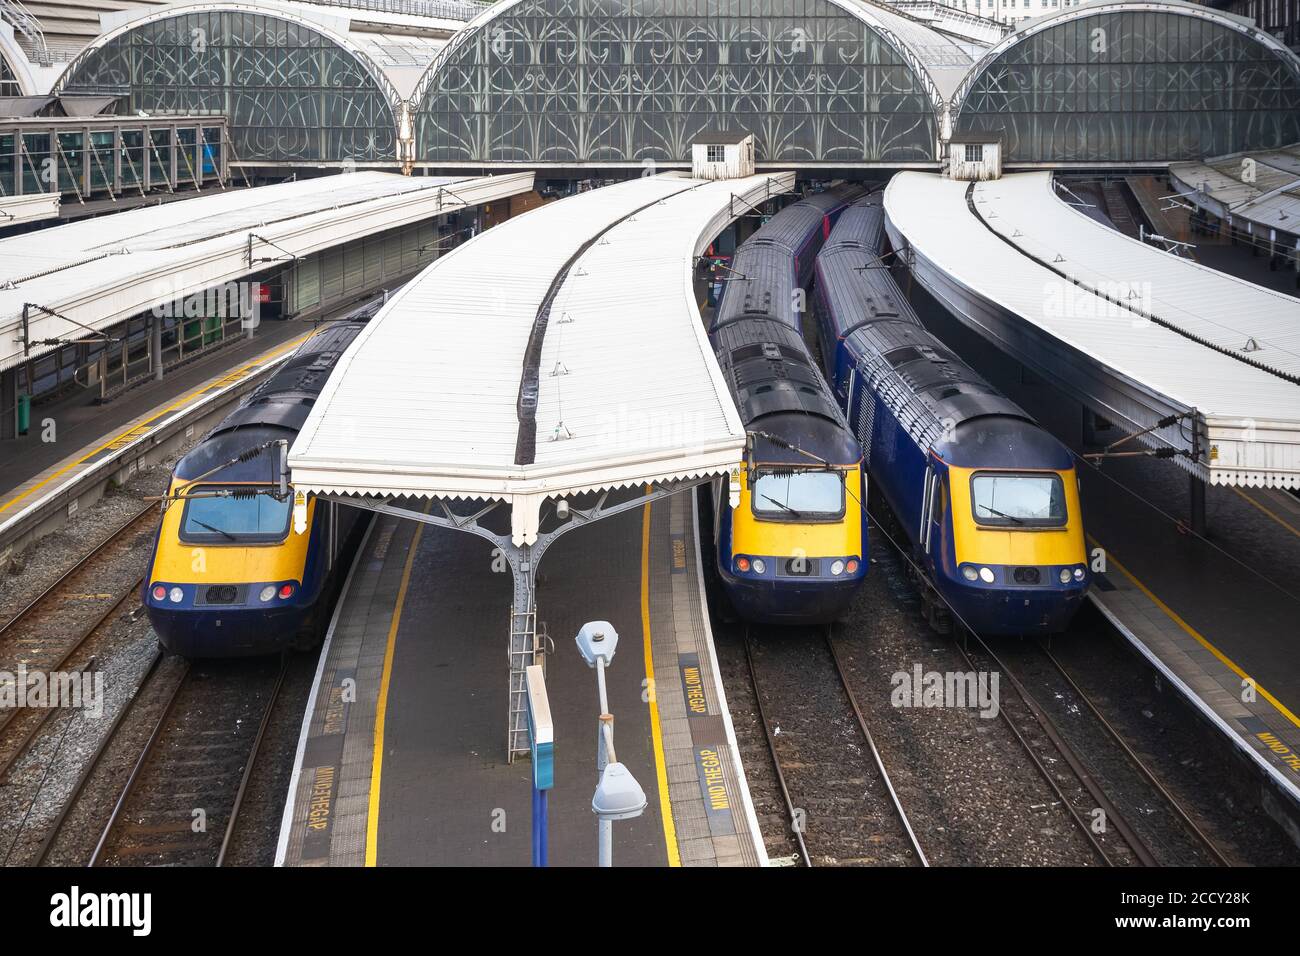 Gare de Paddington à Londres, trains en attente de départ Banque D'Images